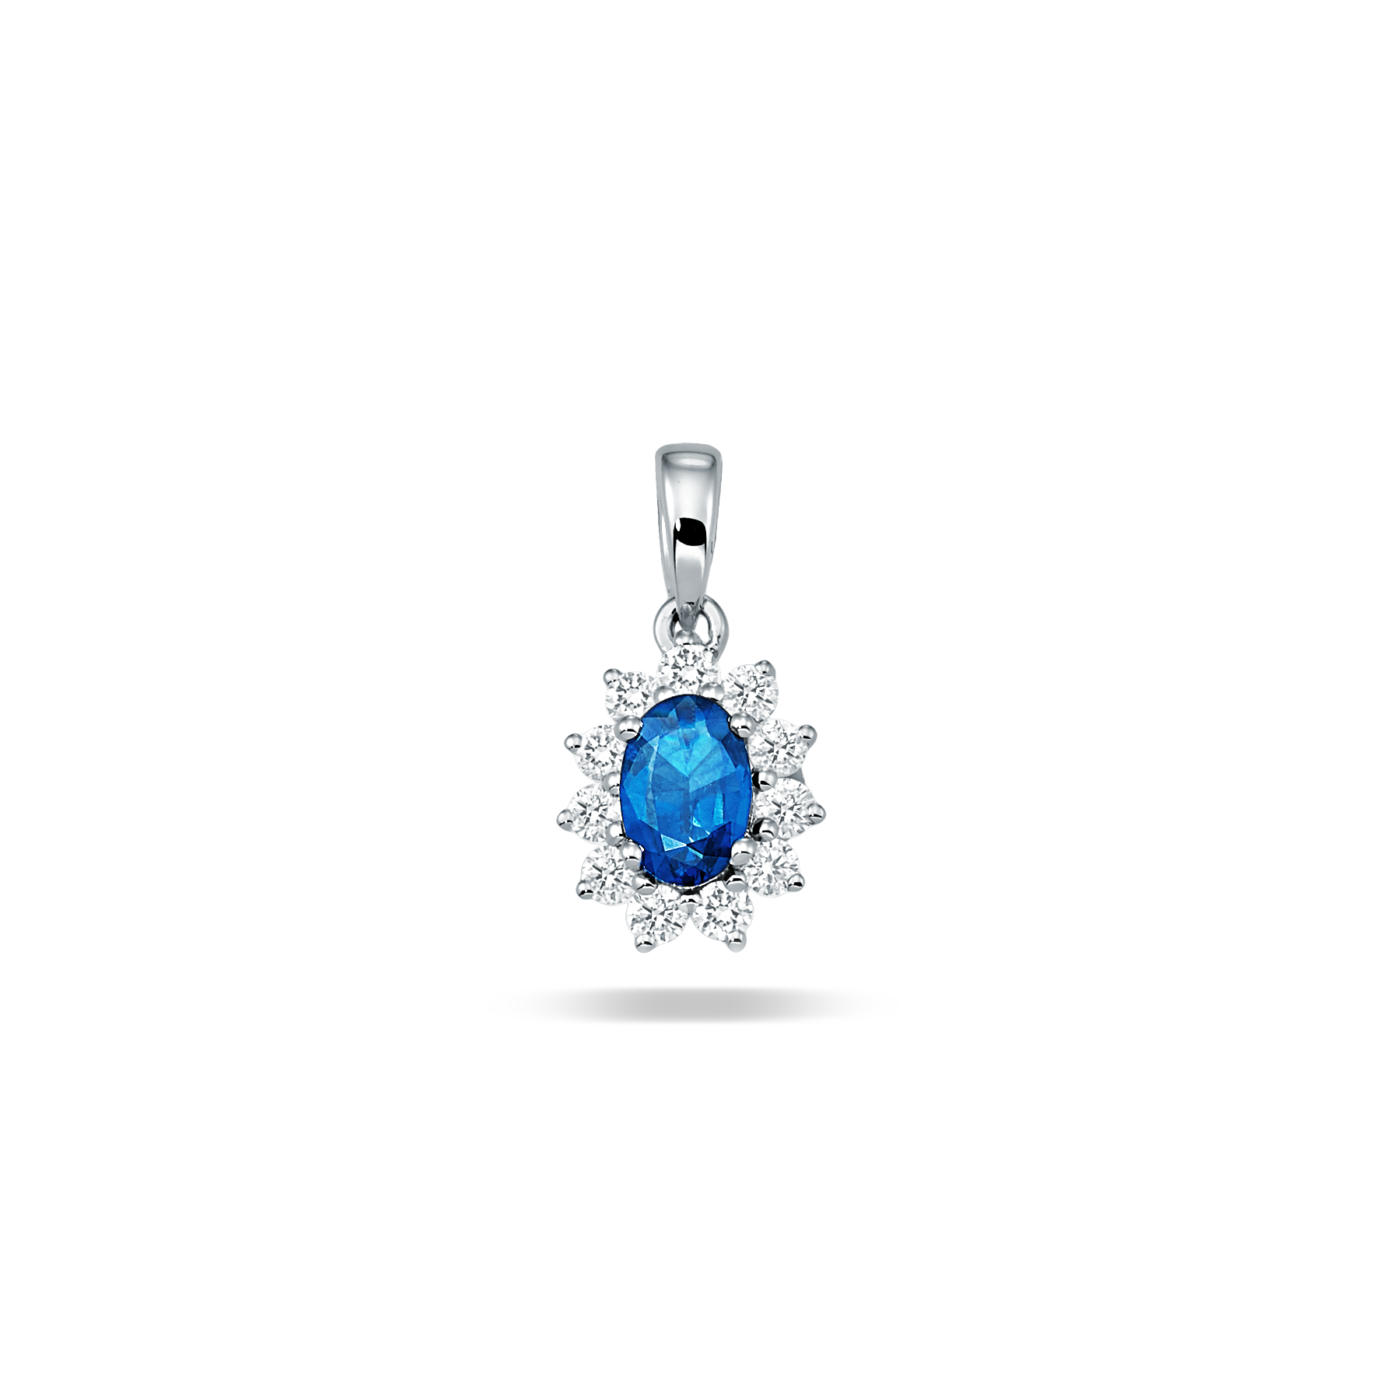 Devous Blue Sapphire Pendant with Diamonds